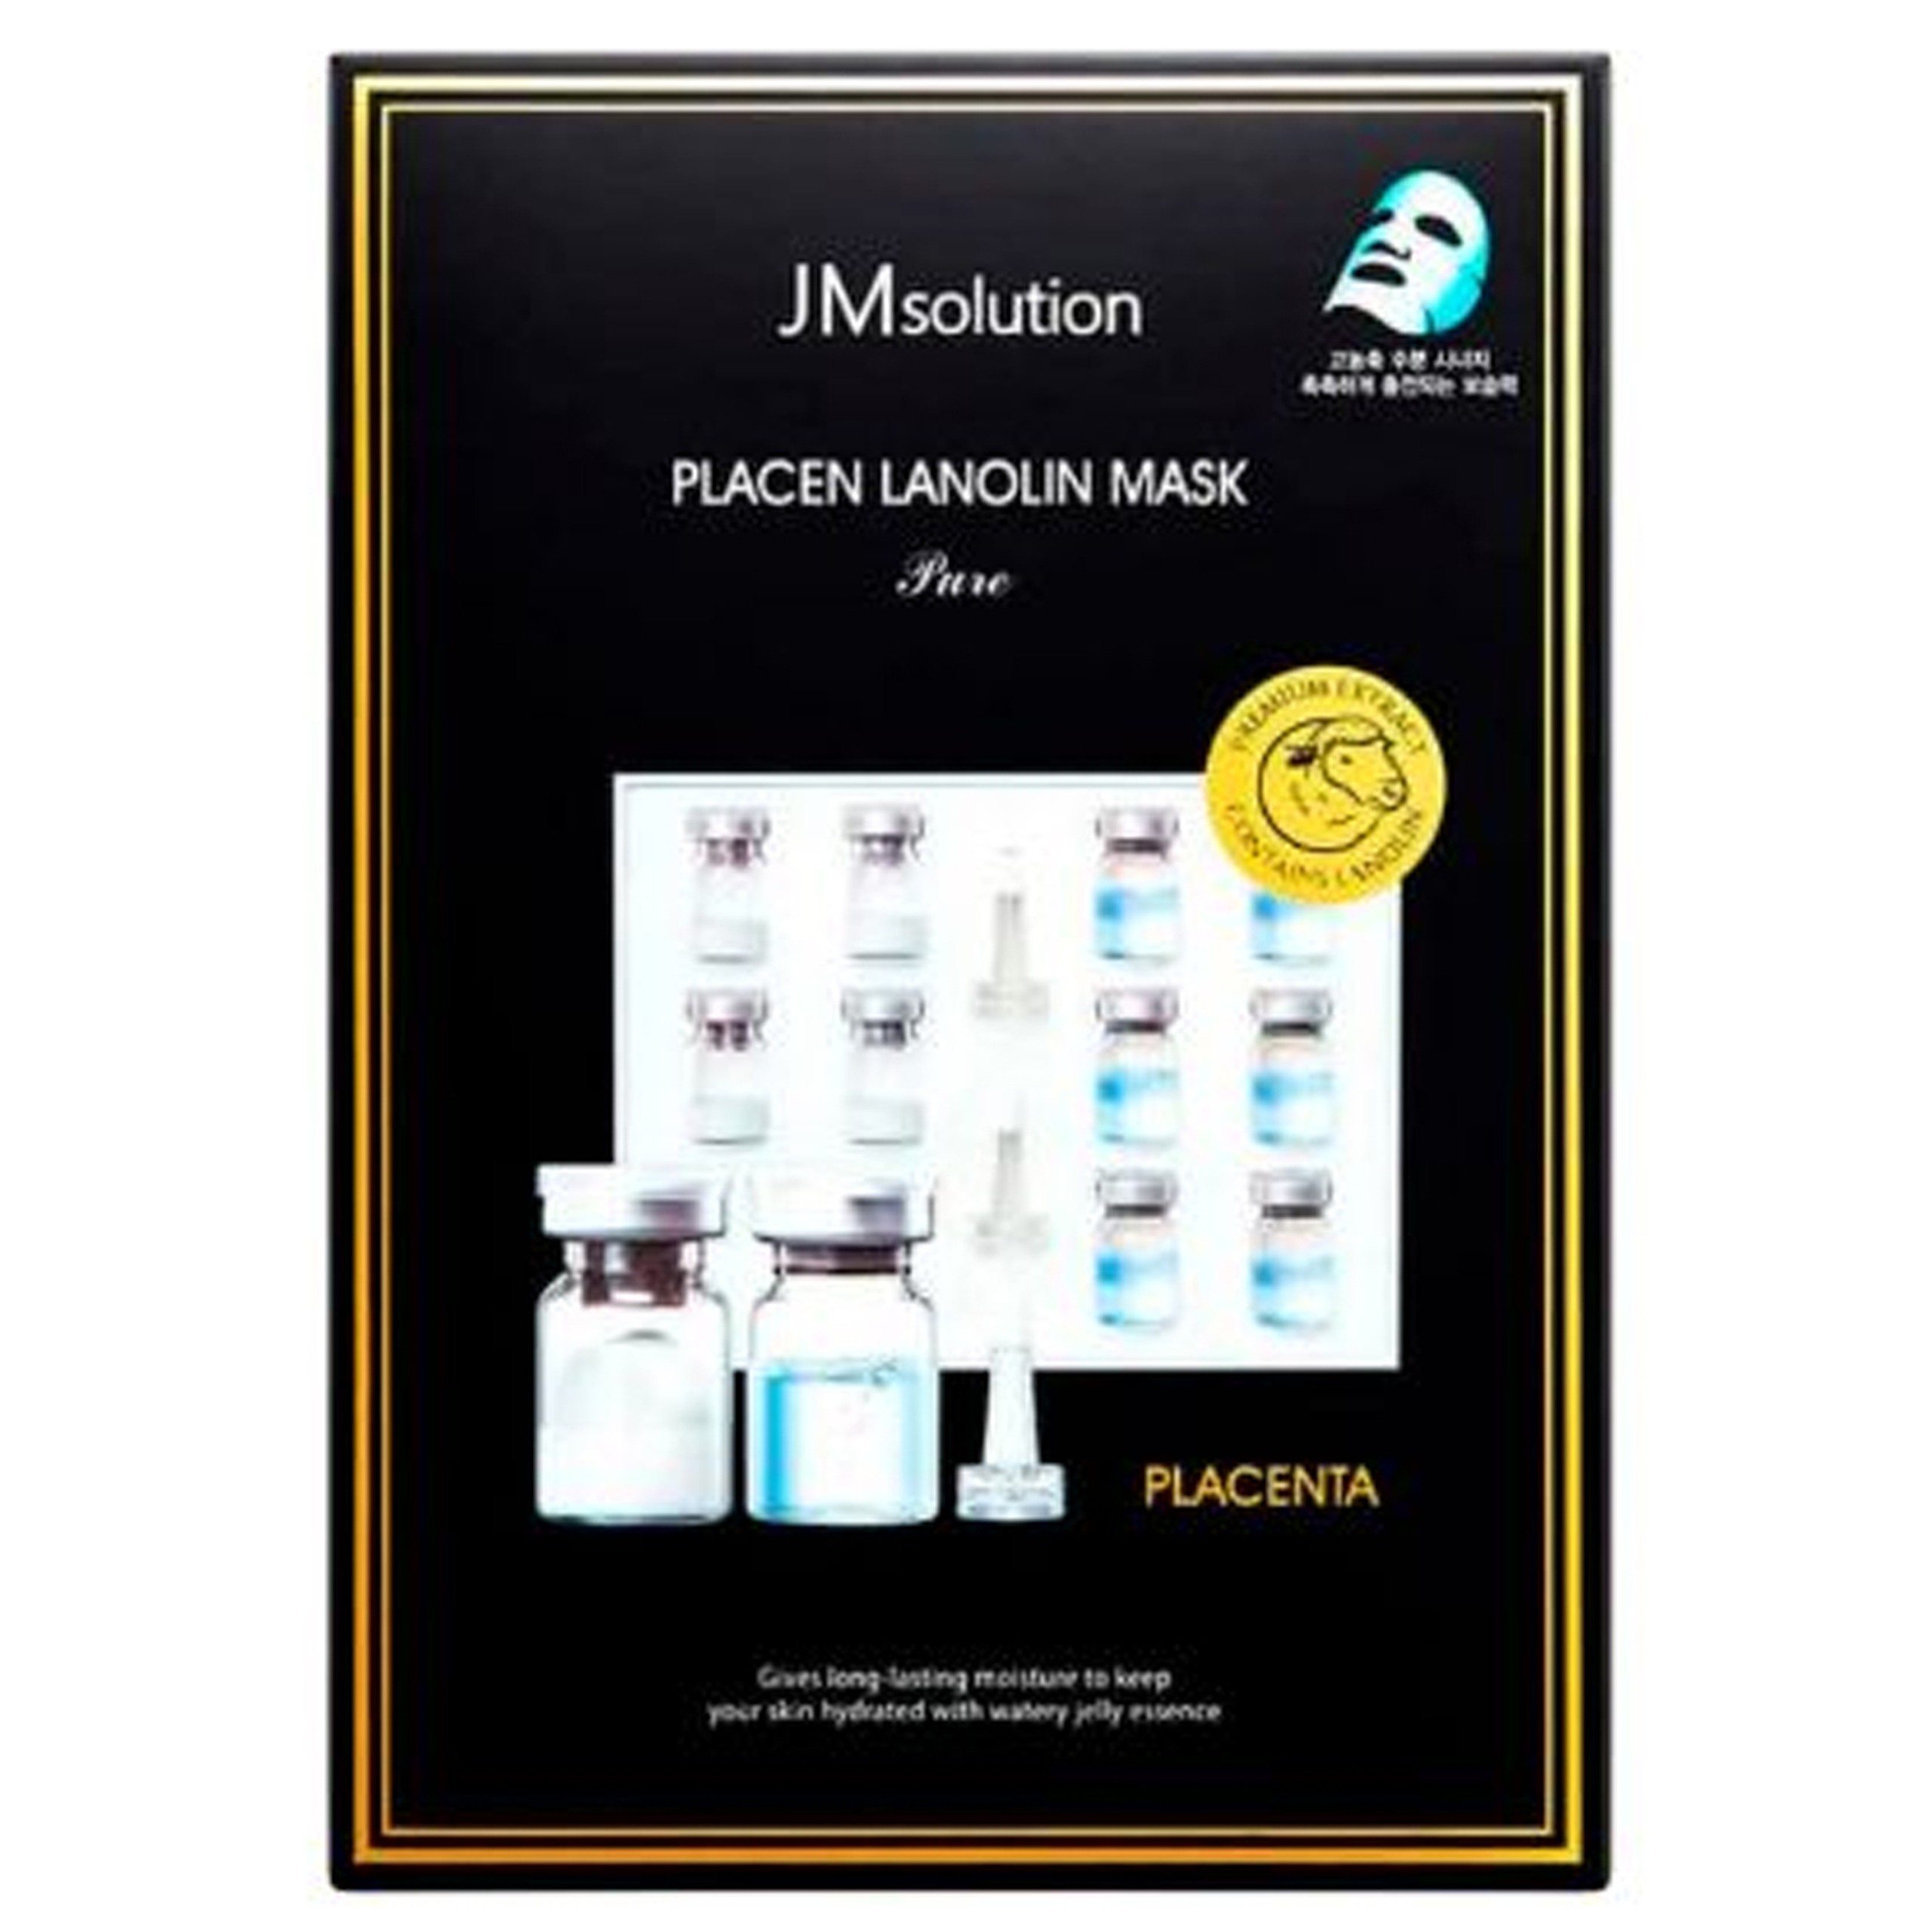 Mặt nạ Placen Lanolin Mask JMsolution dưỡng ẩm và cung cấp độ ẩm trên da (30ml)